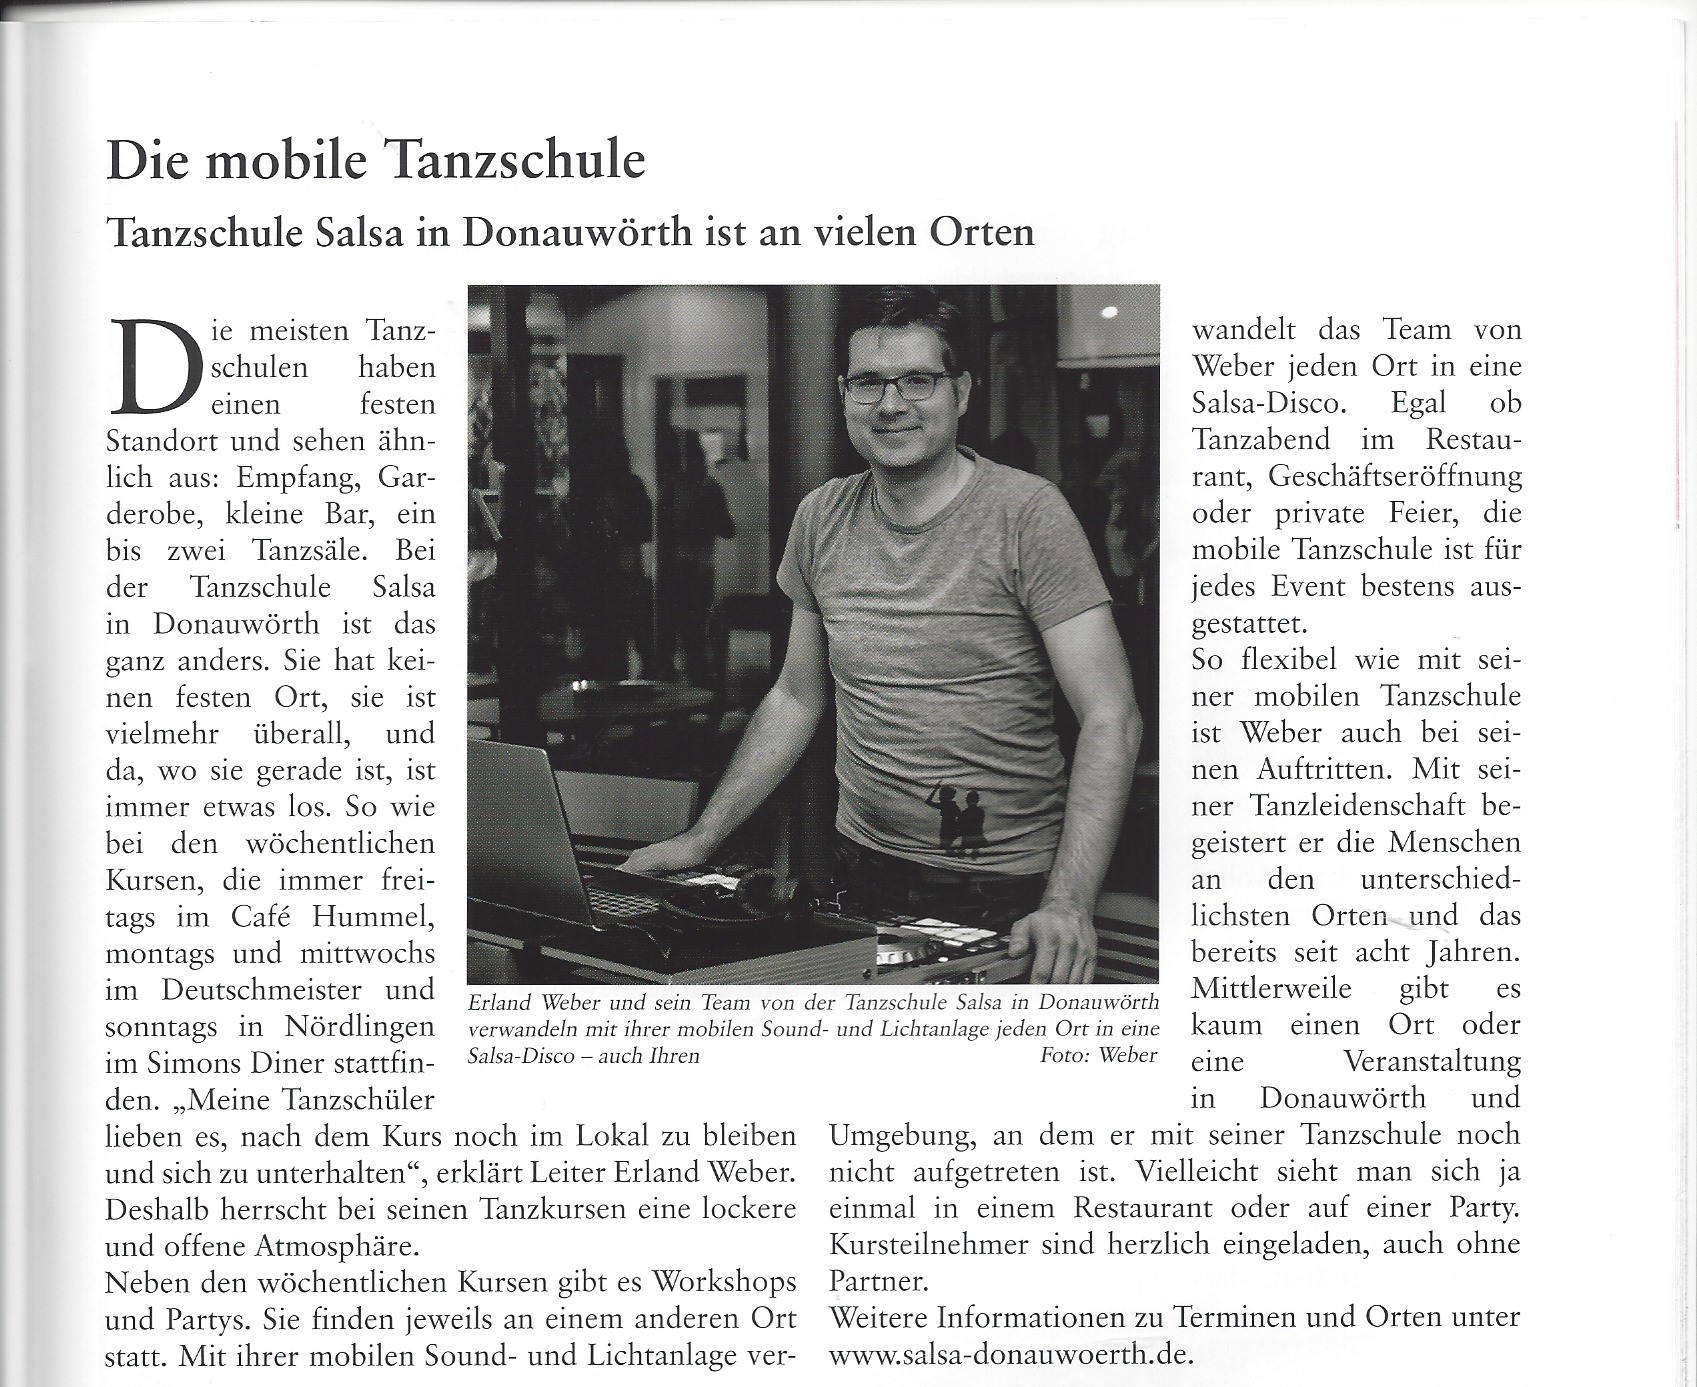 Die mobile Tanzschule, Donauwörther Stadtgespräch, Ausgabe 3/2016